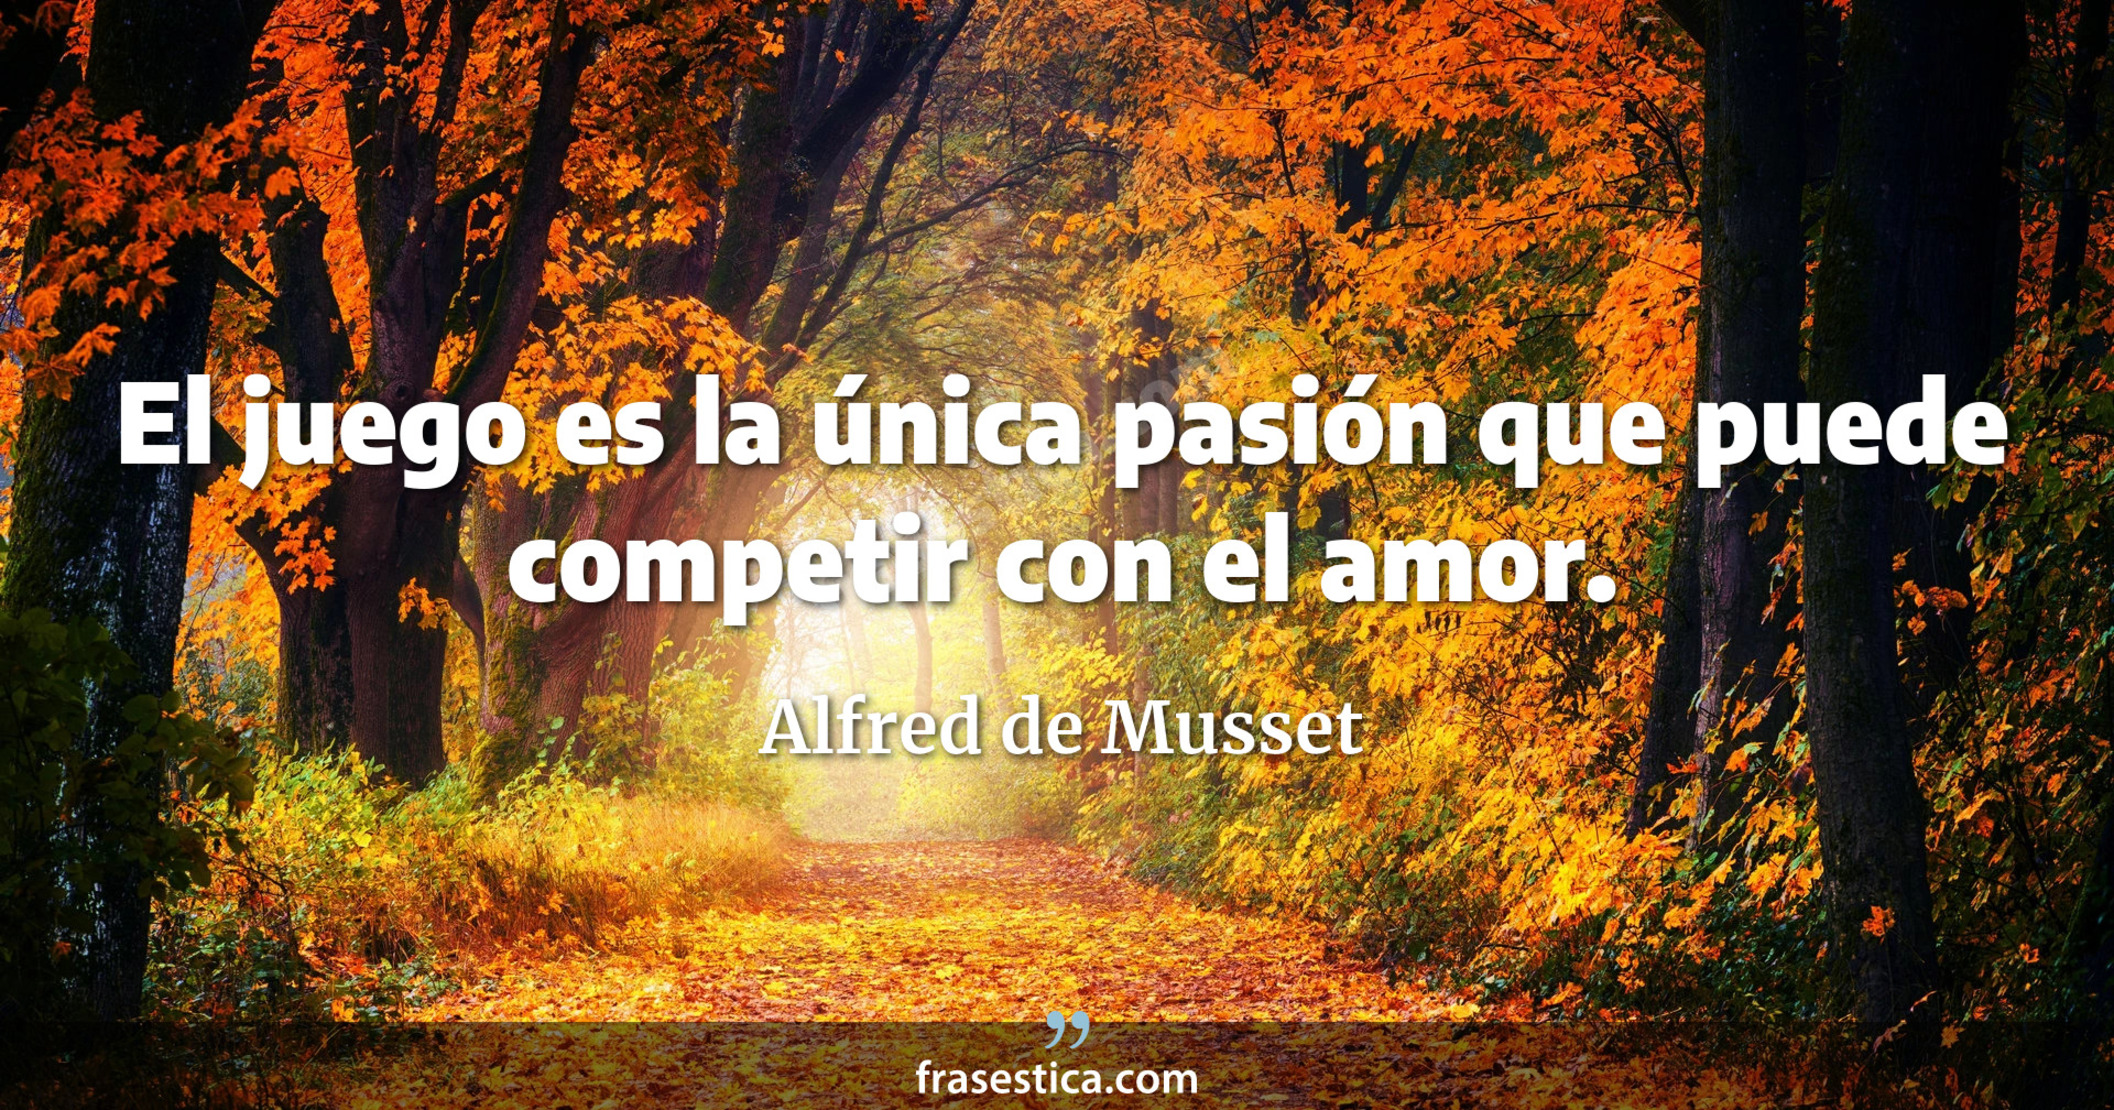 El juego es la única pasión que puede competir con el amor. - Alfred de Musset